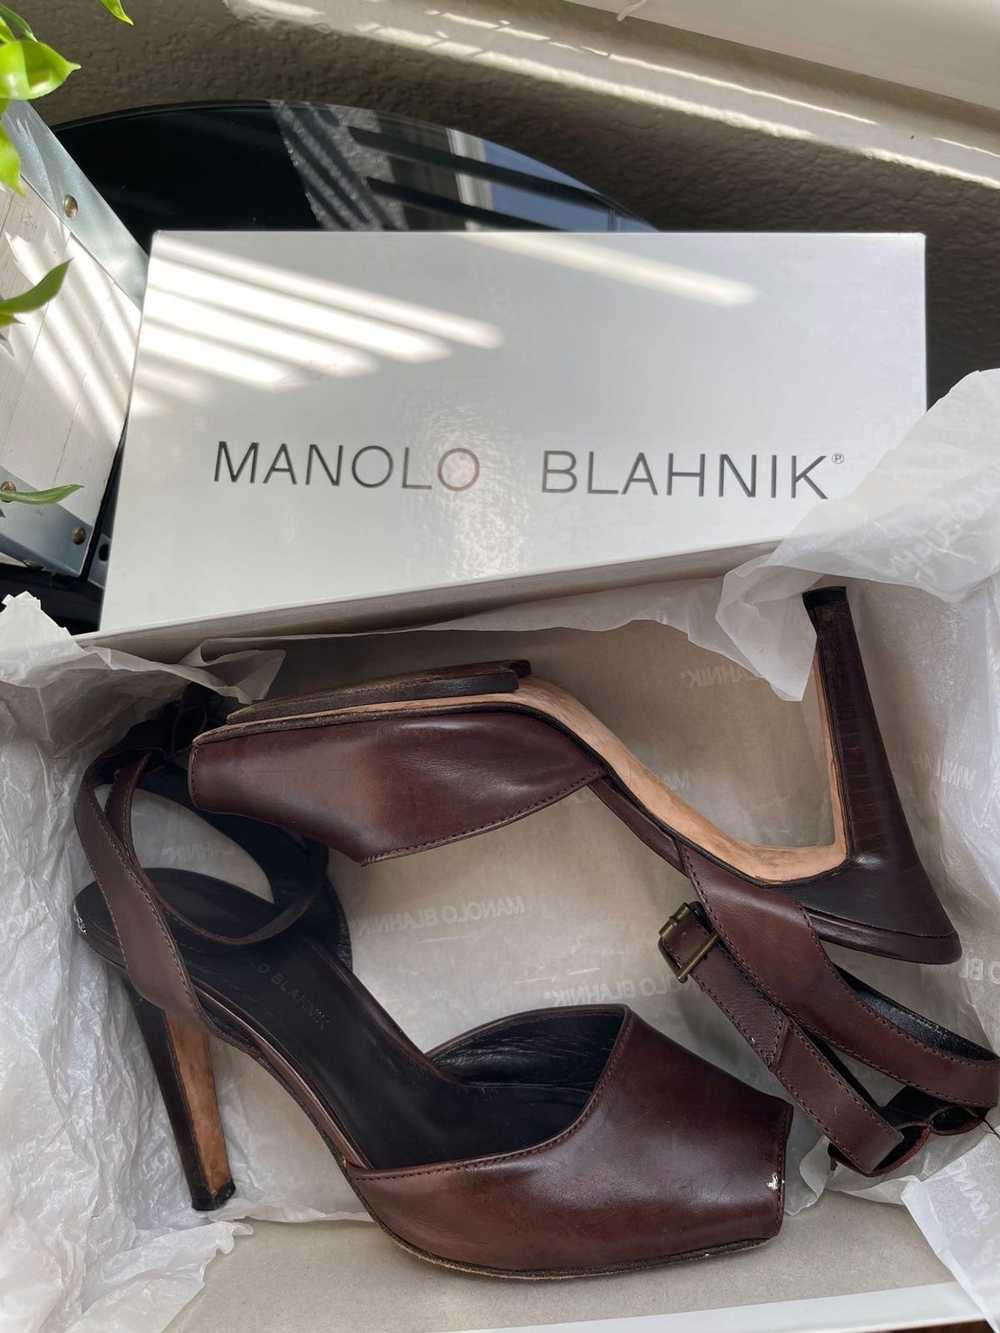 Manolo Blahnik Manolo Blahnik “Brown Peep Toe” He… - image 3